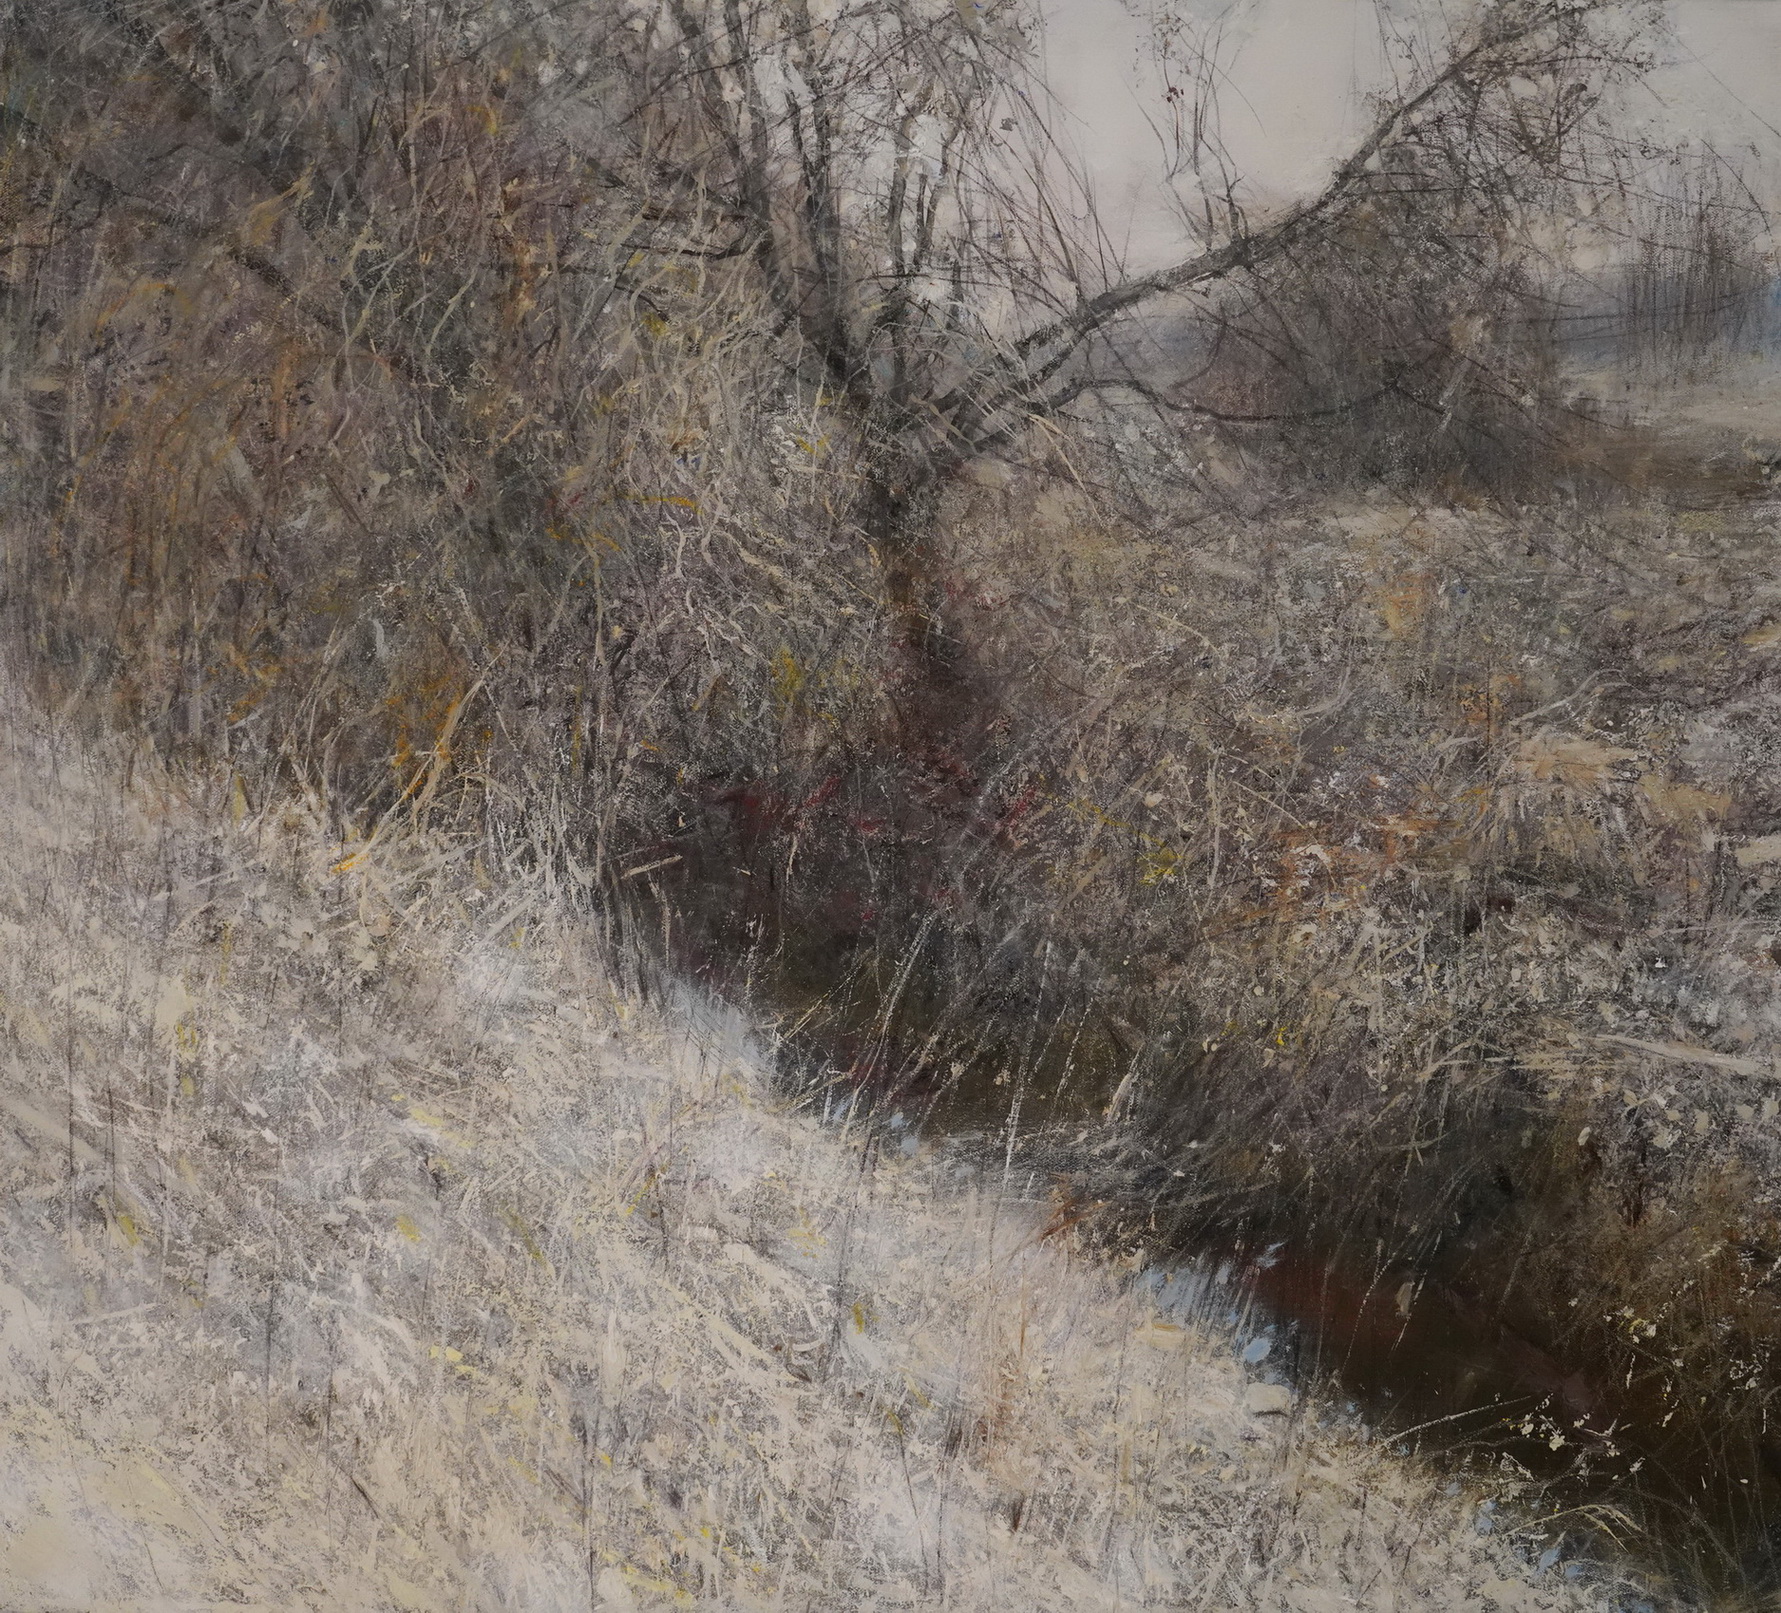 Landscape №321 - 1, Yuri Pervushin, Buy the painting Mixed media